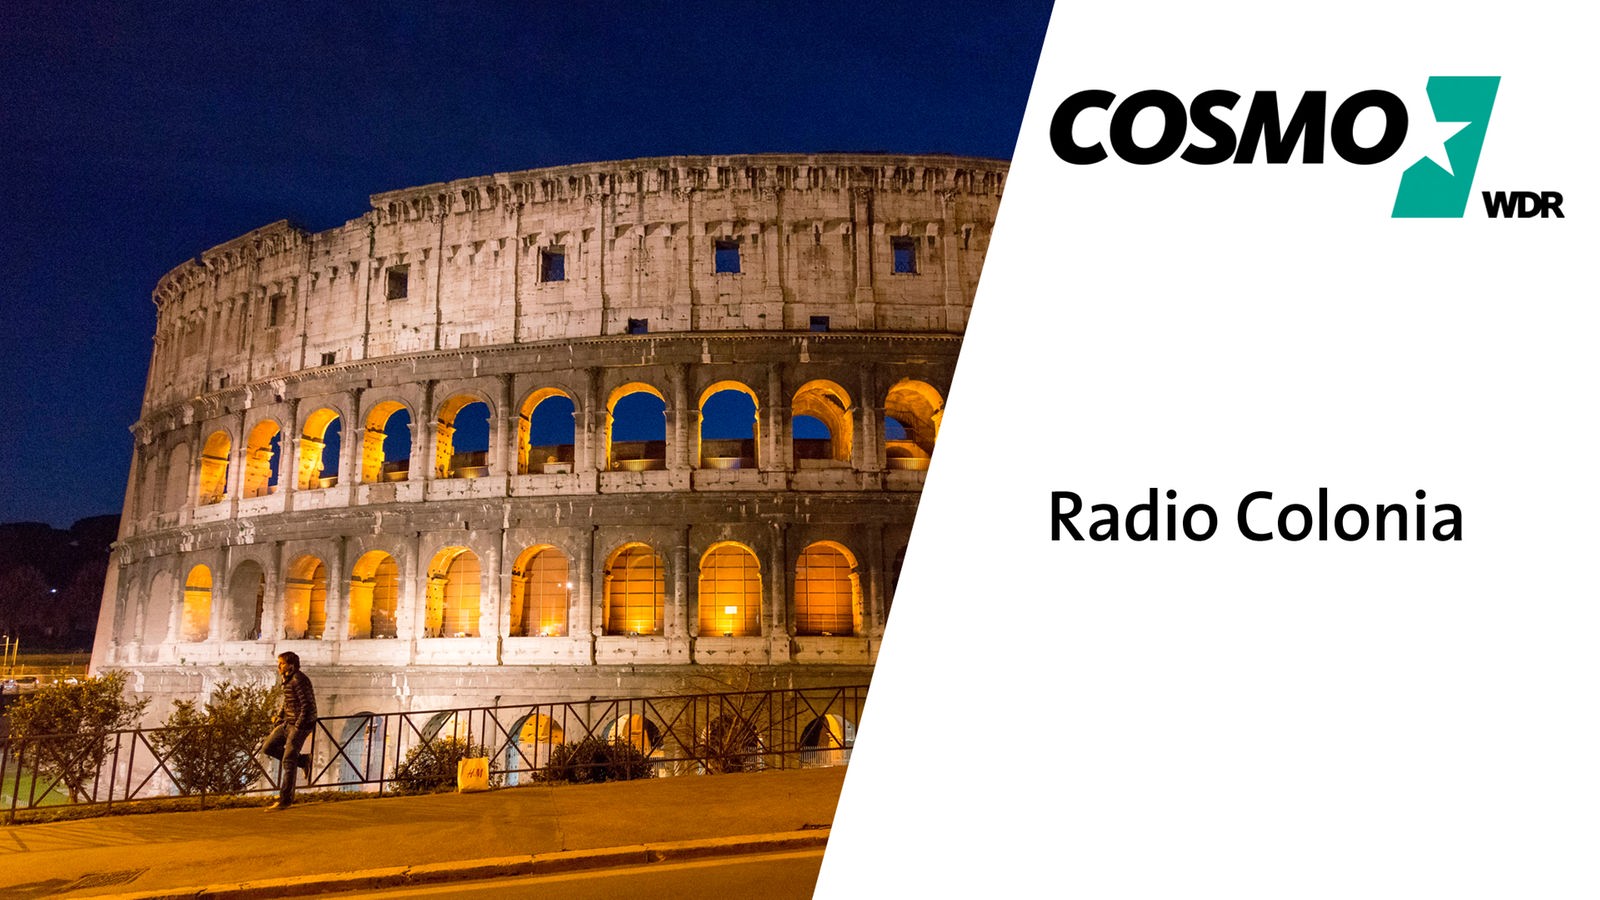 Cosmo Radio Colonia Cosmo Radio Colonia Cosmo Wdr